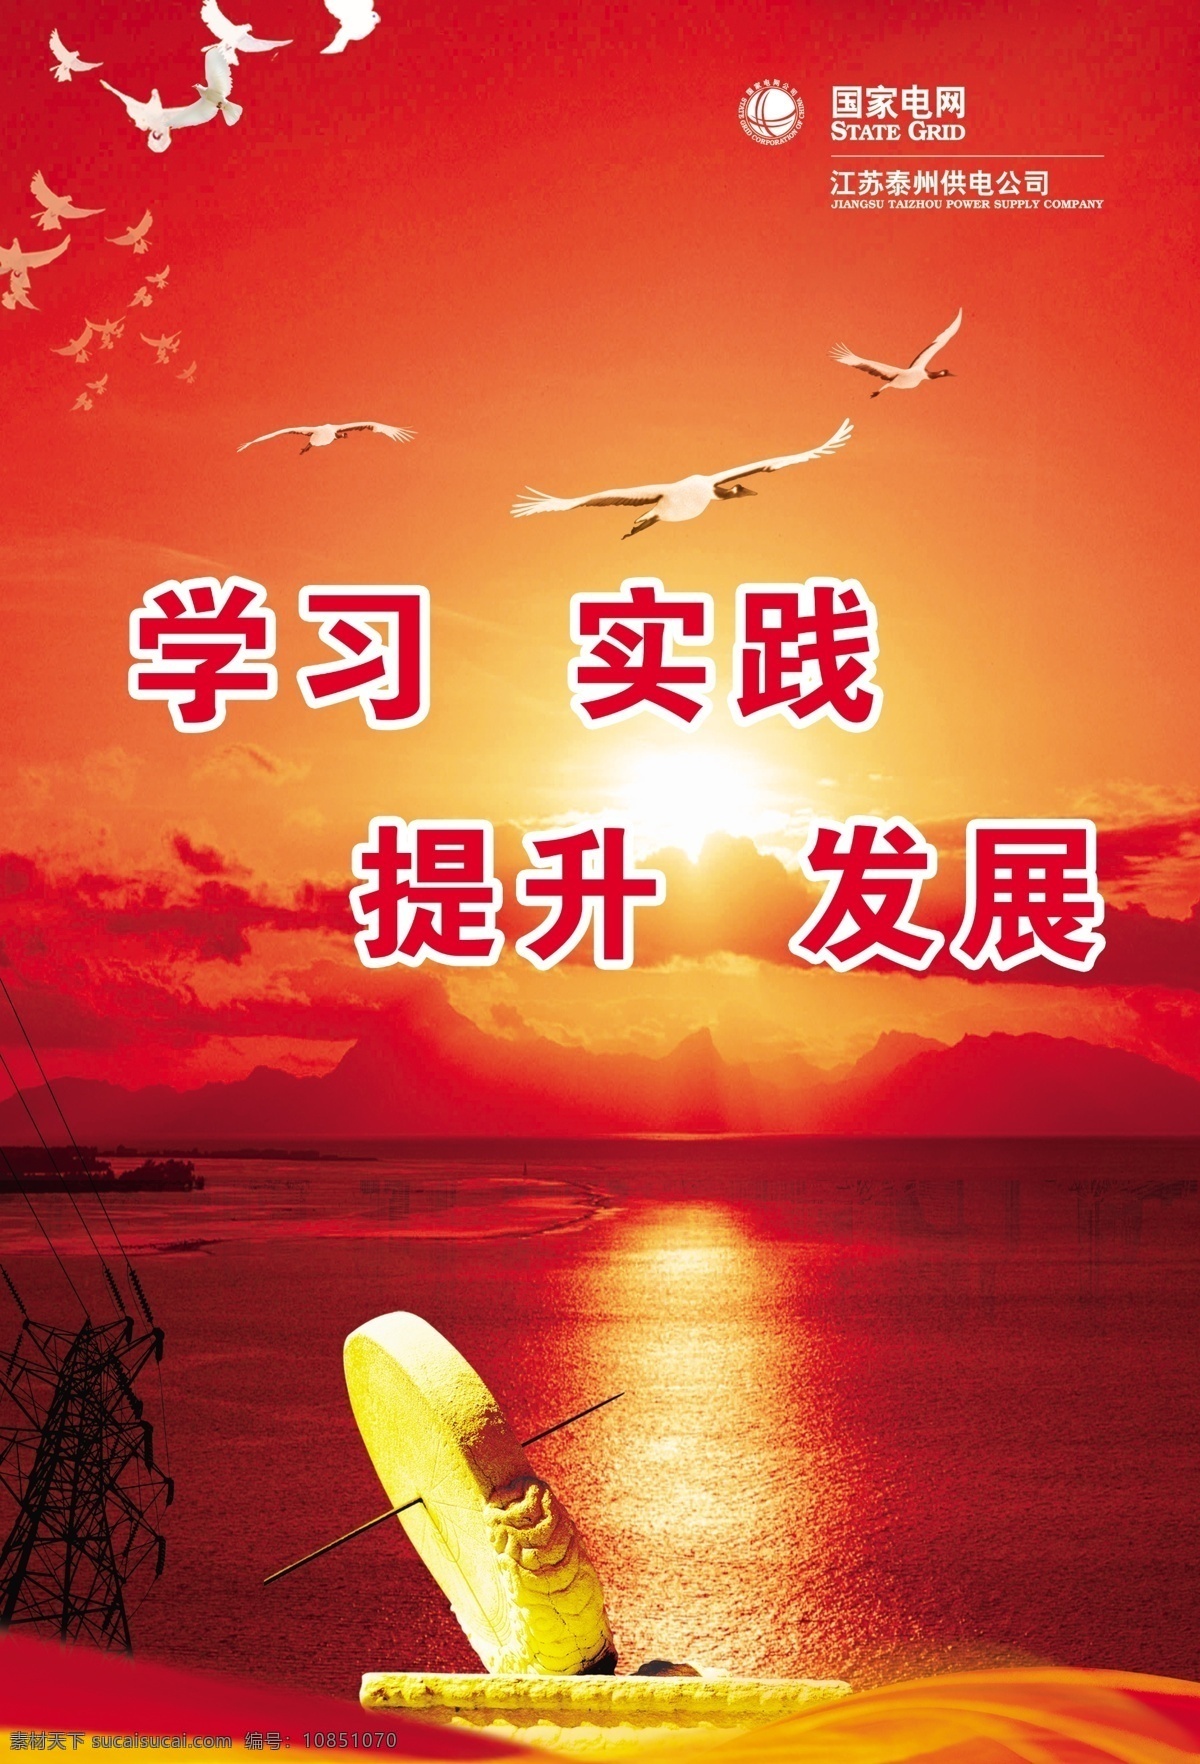 励志 标语 大海 供电 广告设计模板 海鸥 红色 励志标语 源文件 展板模板 大气磅礴 初升太阳 其他展板设计